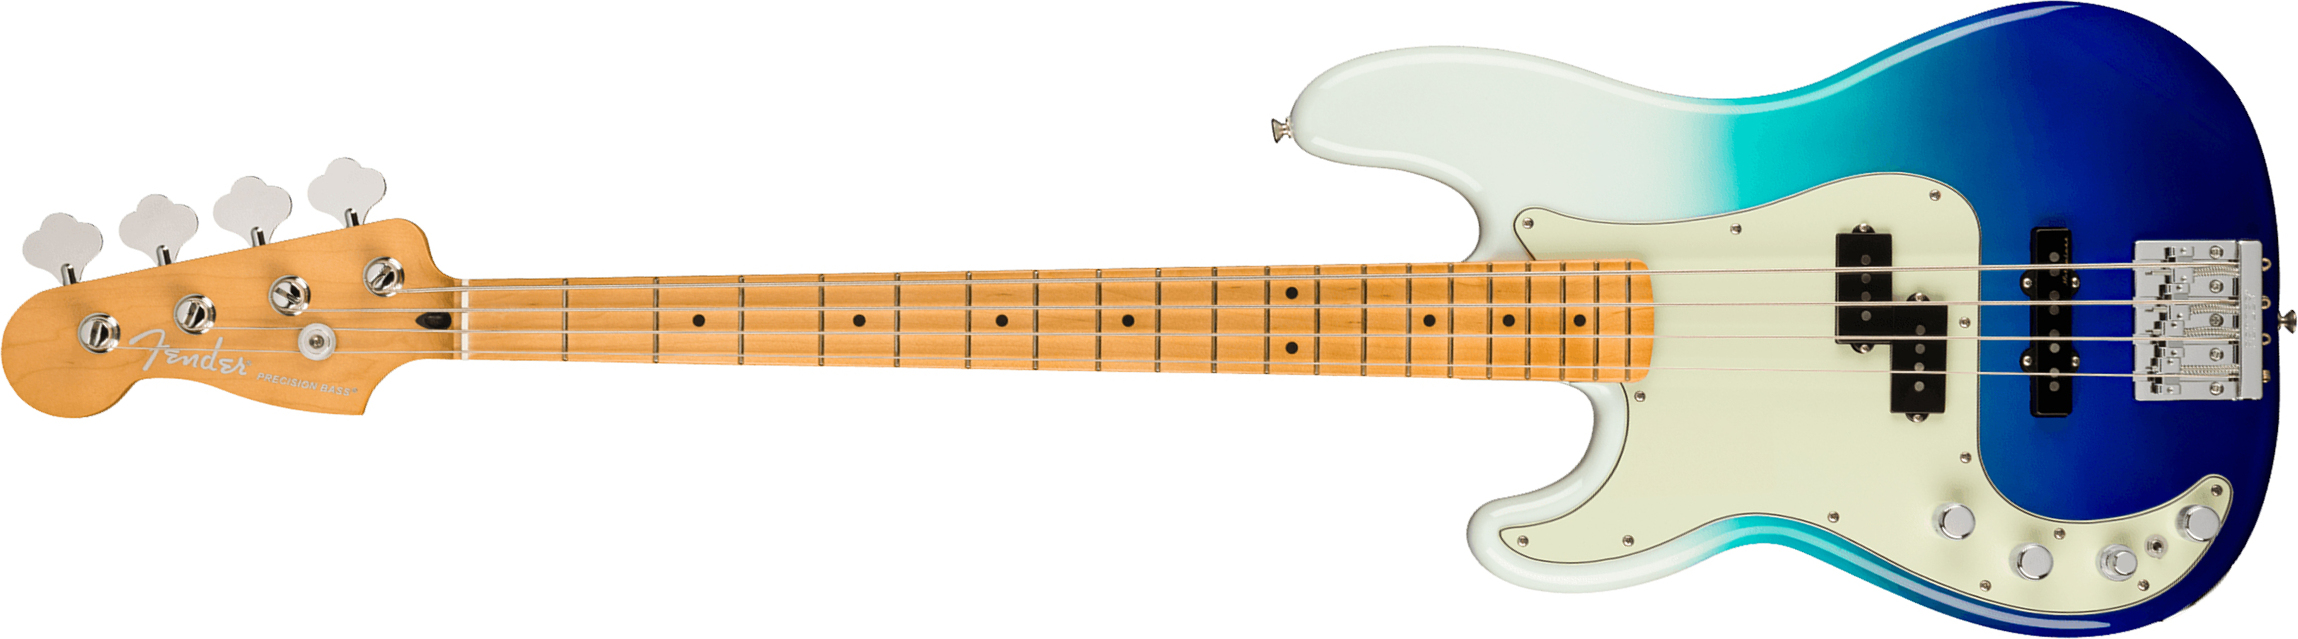 Fender Precision Bass Player Plus Lh Mex Gaucher Active Mn - Belair Blue - Basse Électrique Solid Body - Main picture